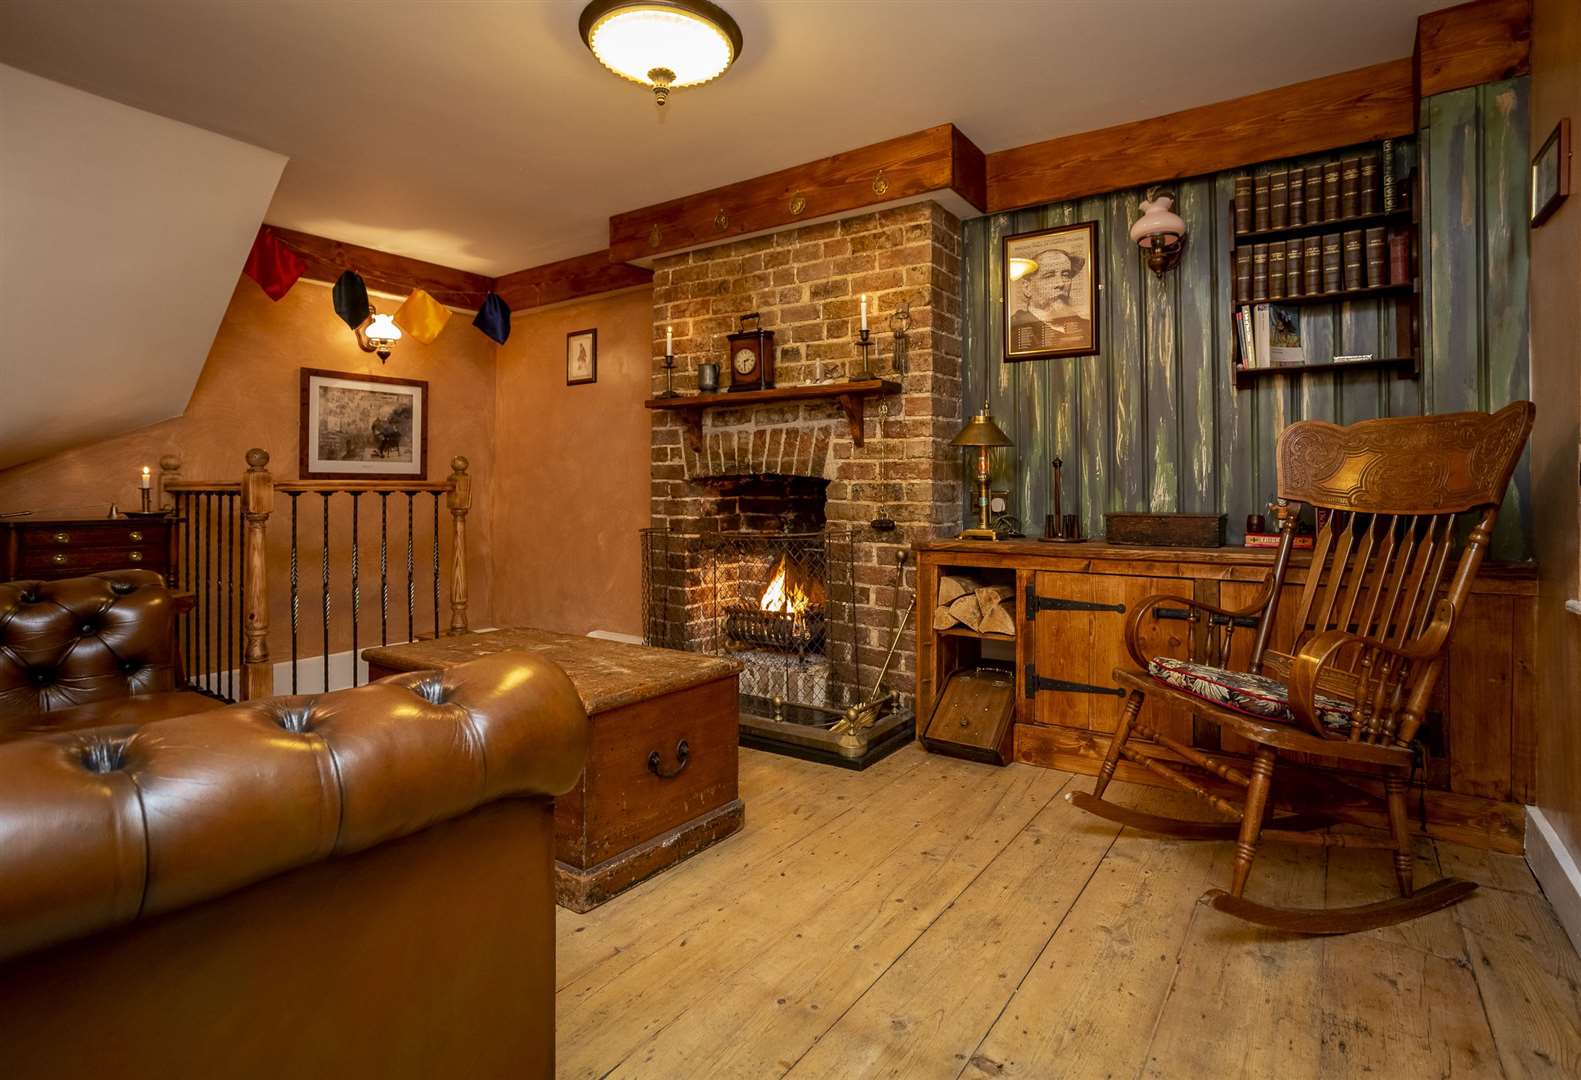 Inside Fagin's Cottage in Broadstairs